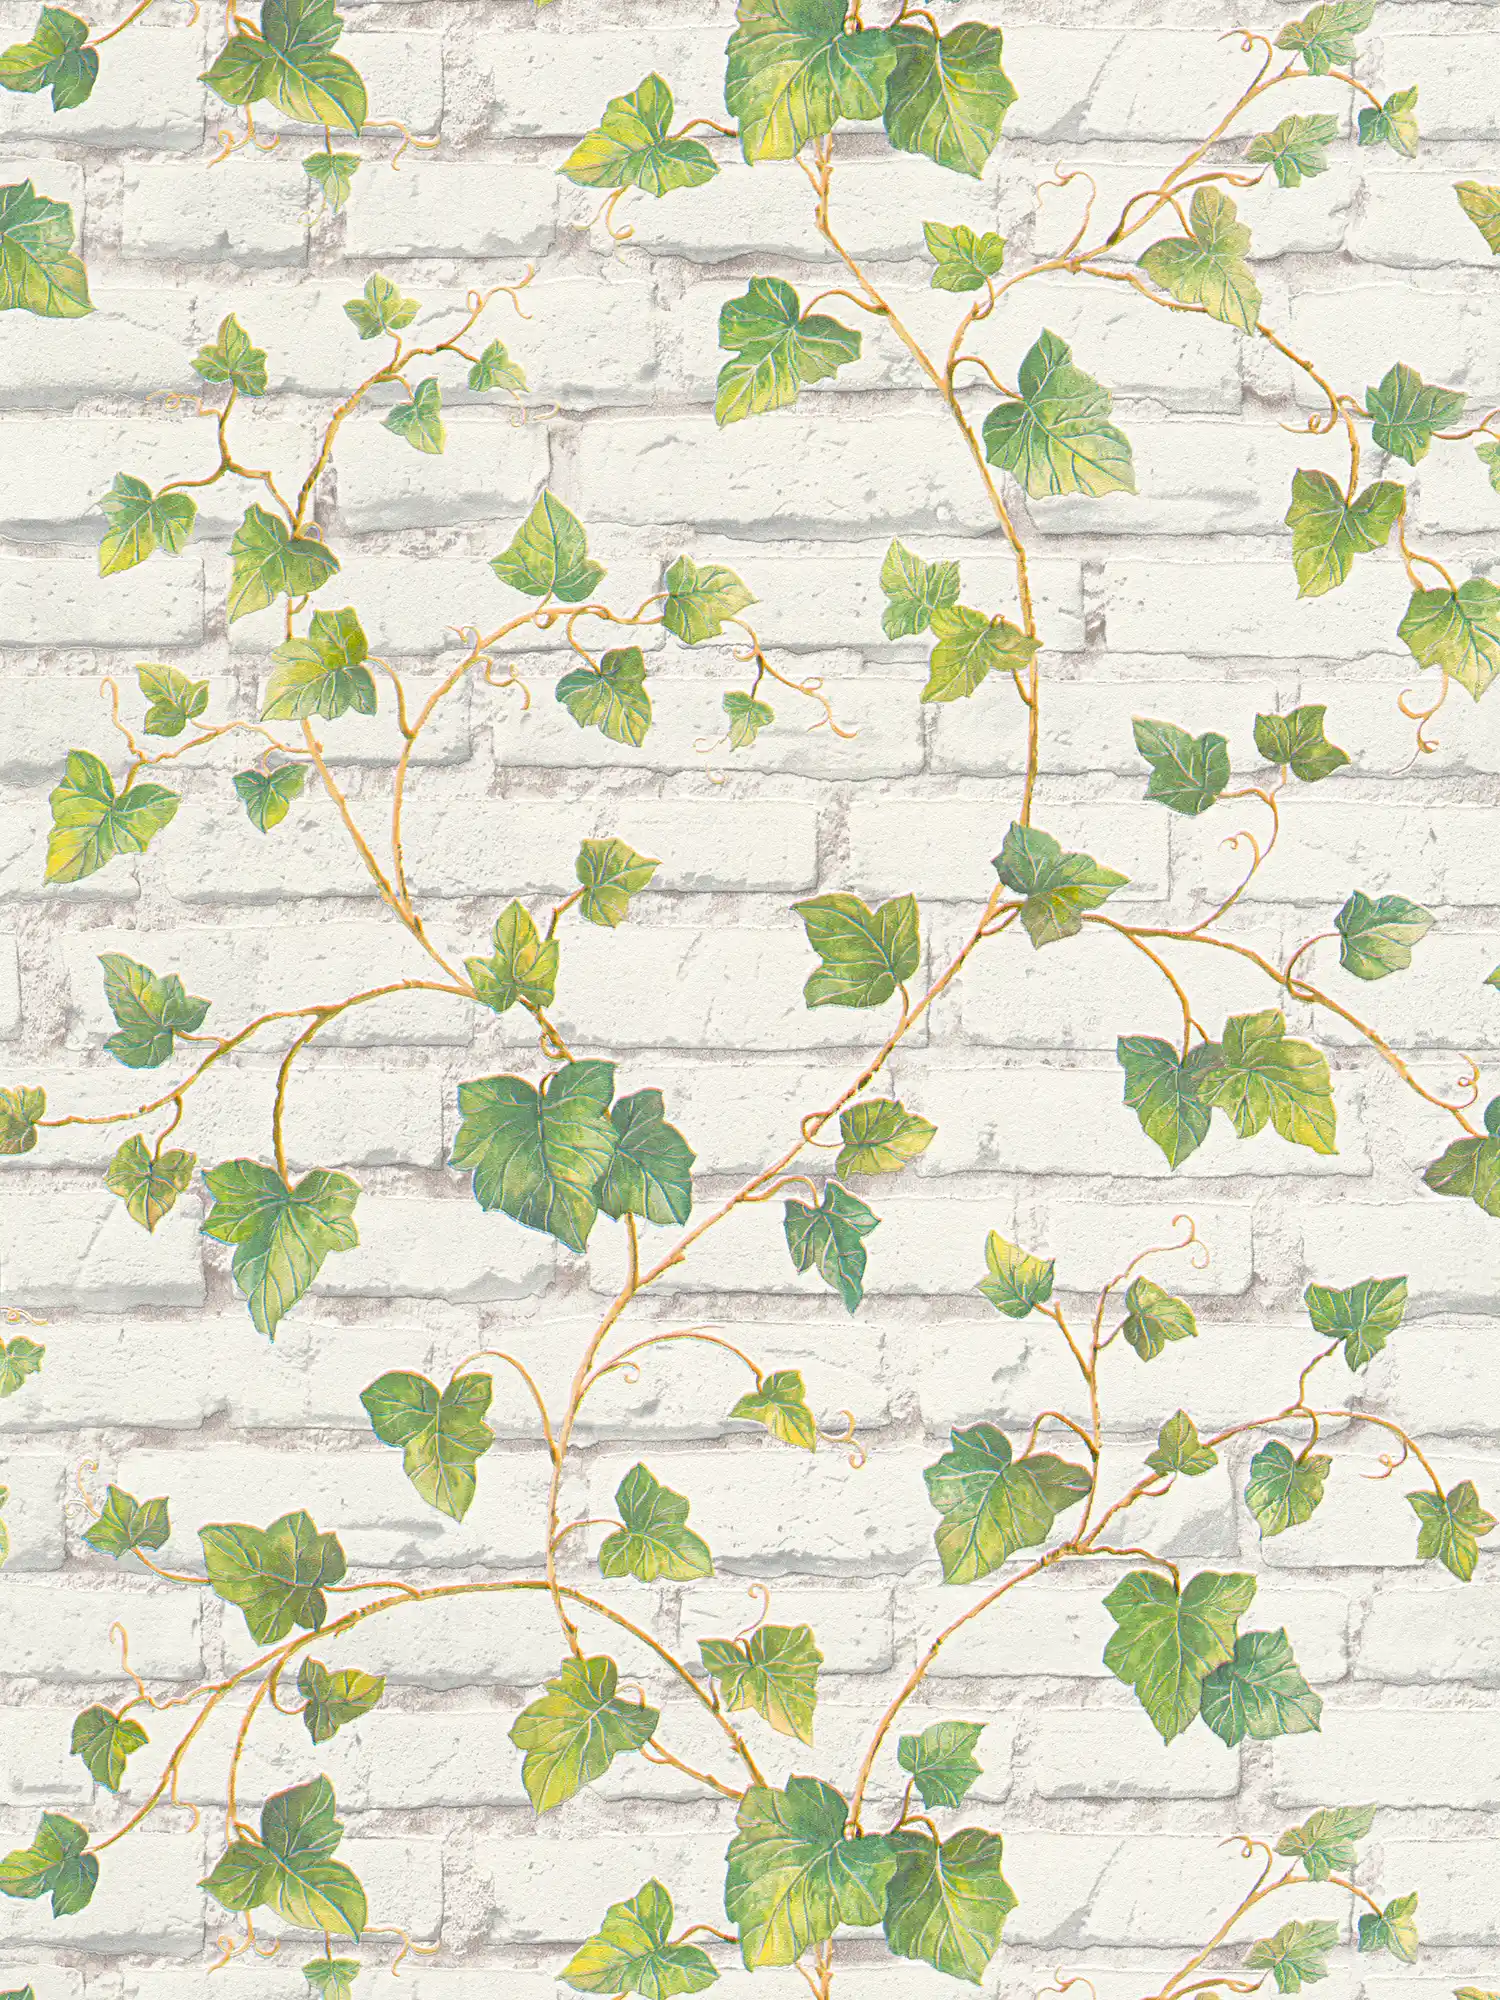 Motiefbehang met witte bakstenen muur en klimopranken - groen, wit, bruin
